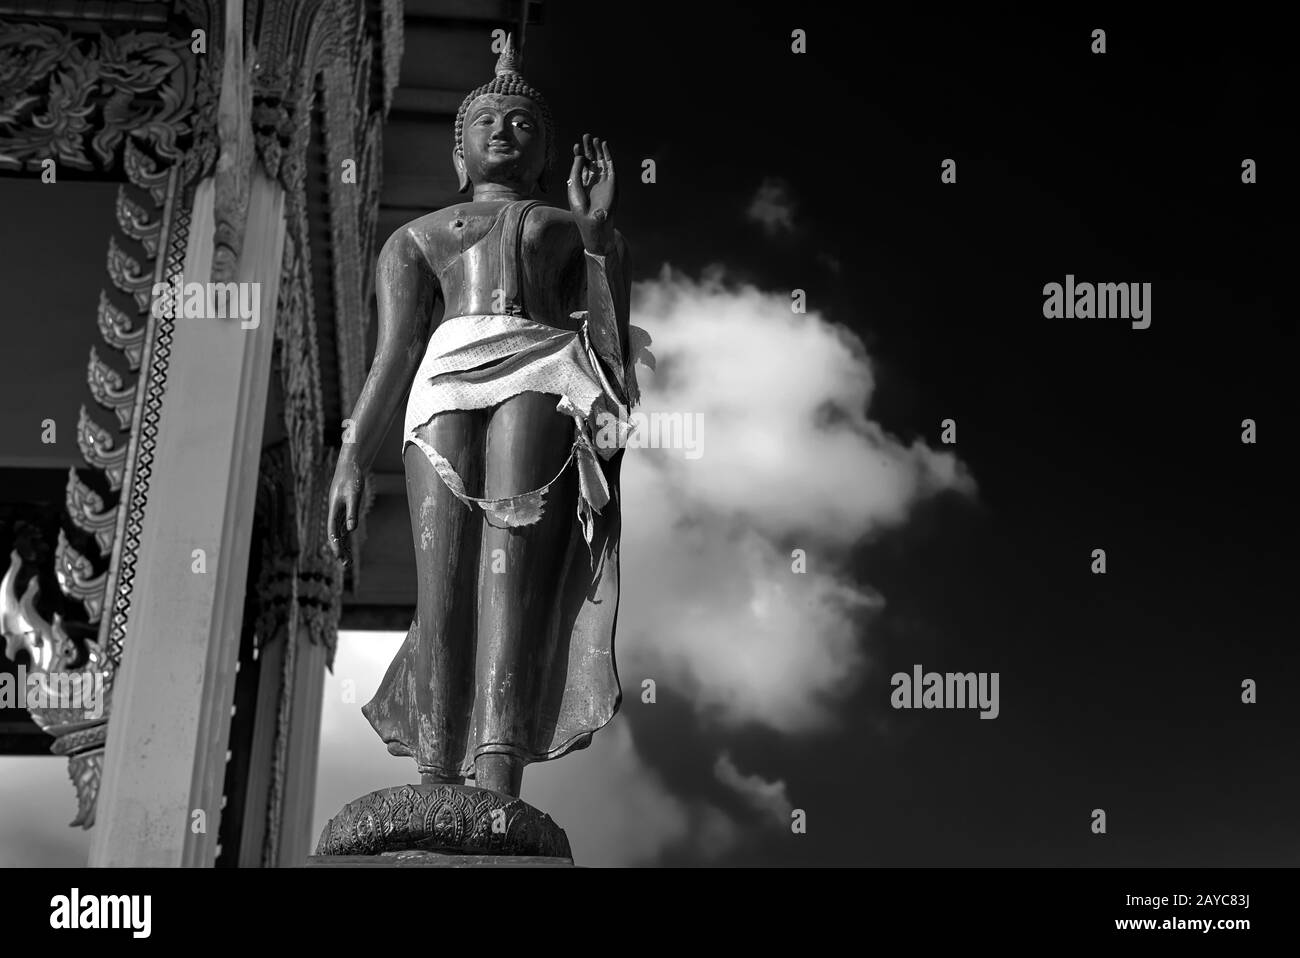 Statua del Buddha con palma a mano aperta, tempio della Thailandia, Asia sudorientale, fotografia in bianco e nero Foto Stock